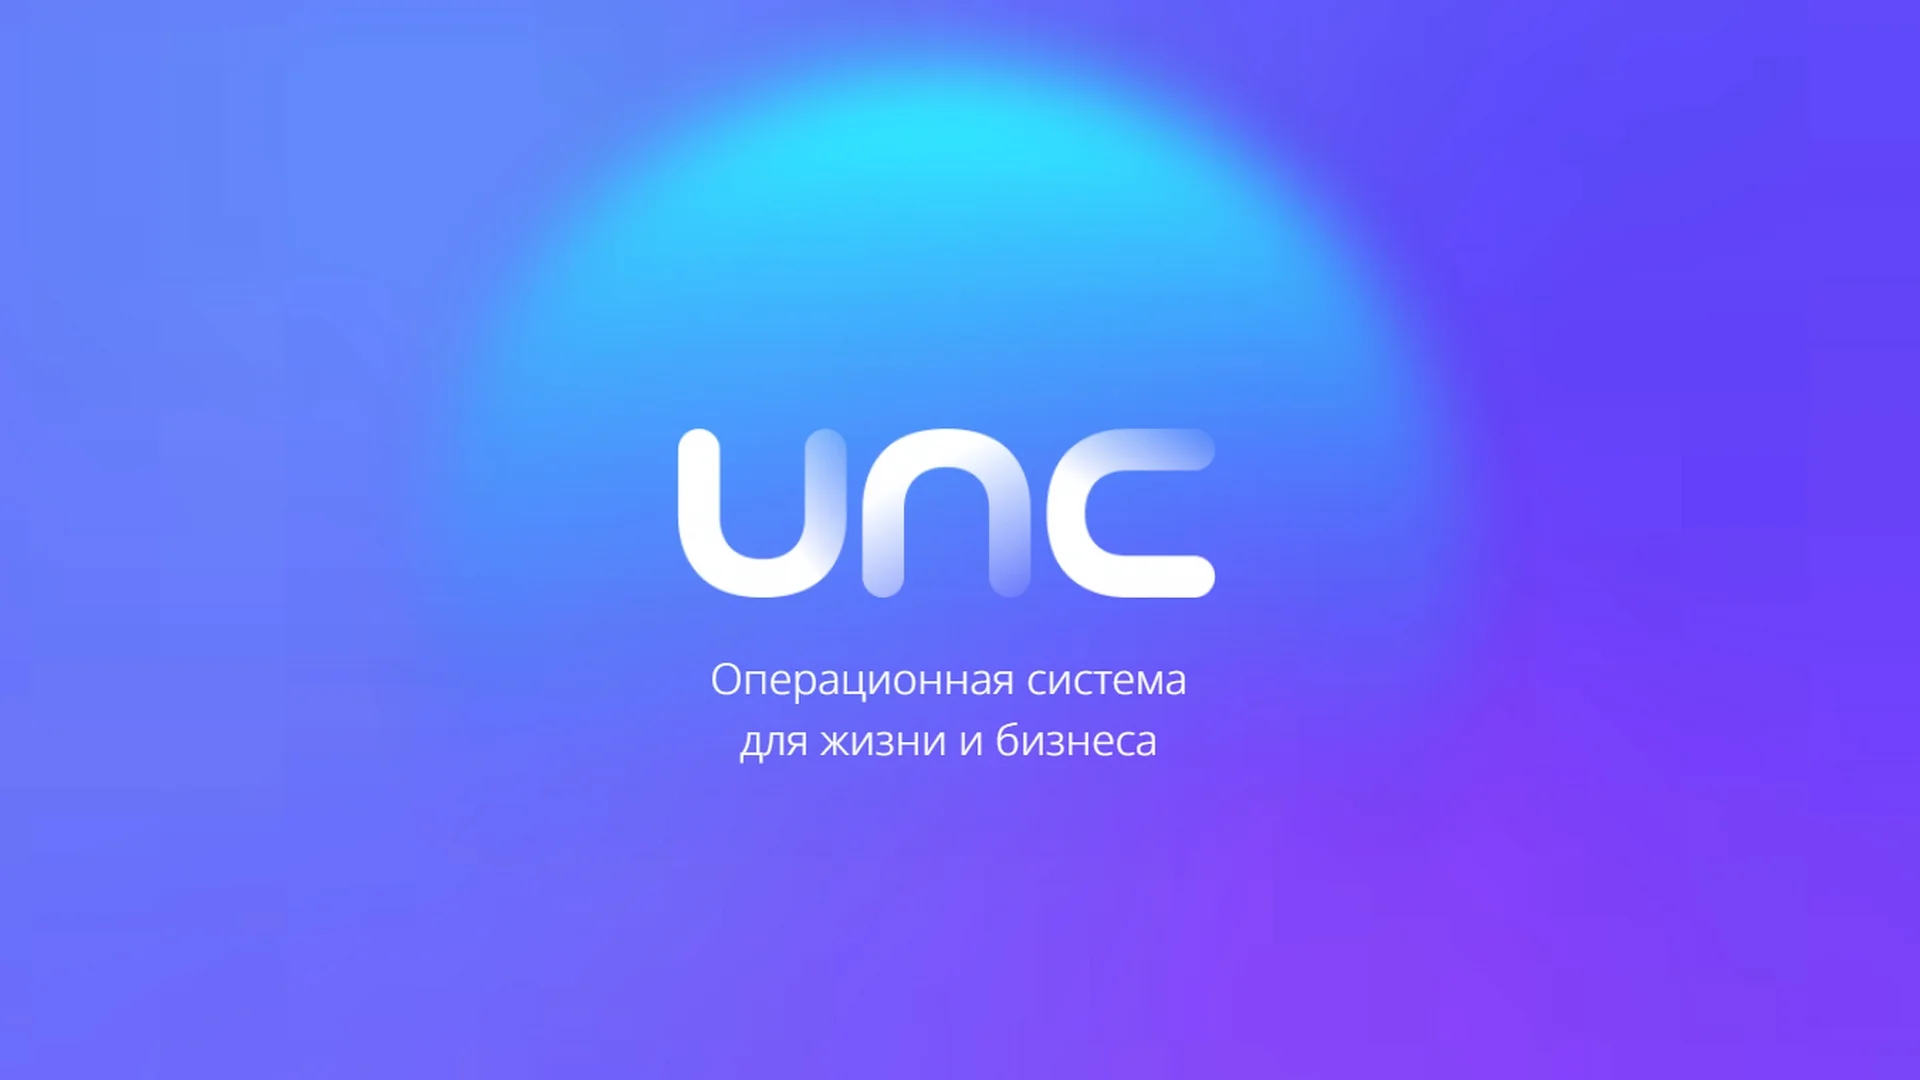 5 причин удалить Windows и поставить Uncom OS — удобную систему от российских разработчиков - изображение обложка